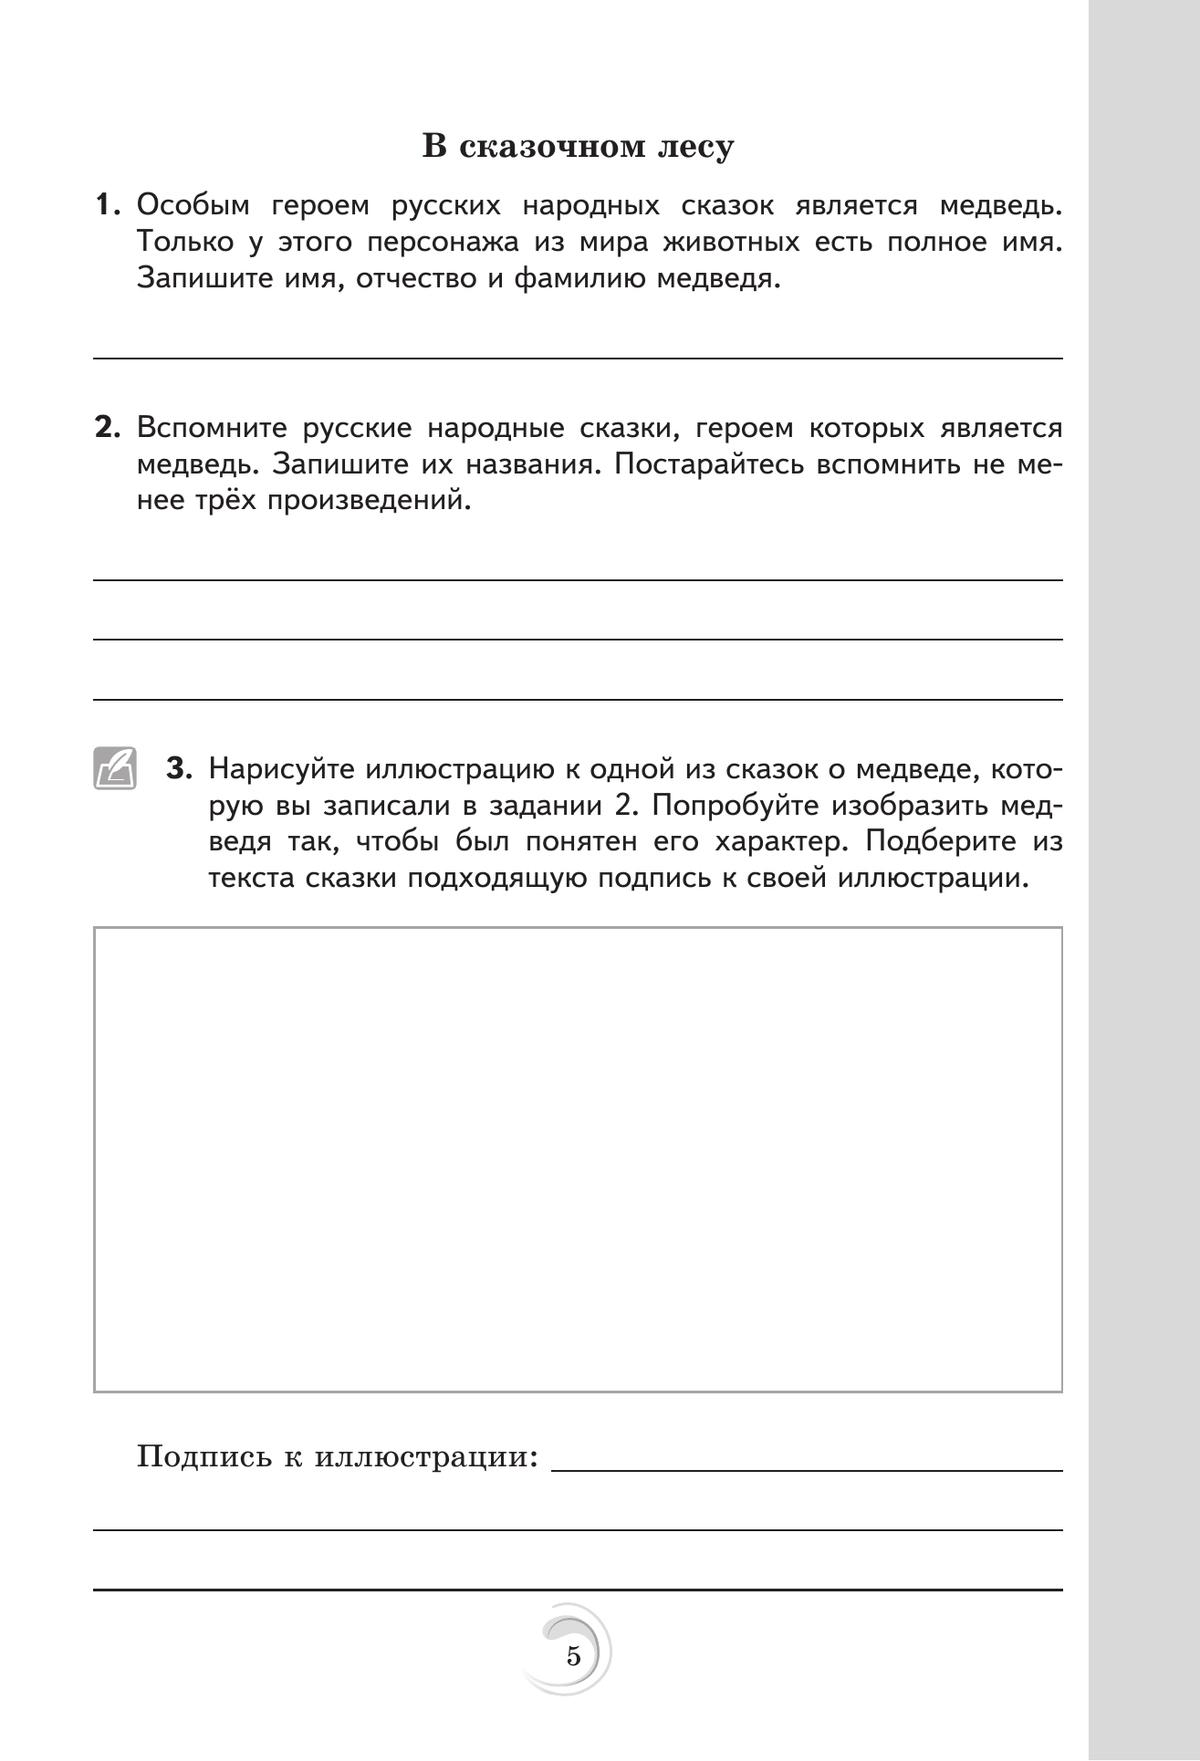 Родная русская литература. 5 класс. Практикум 2